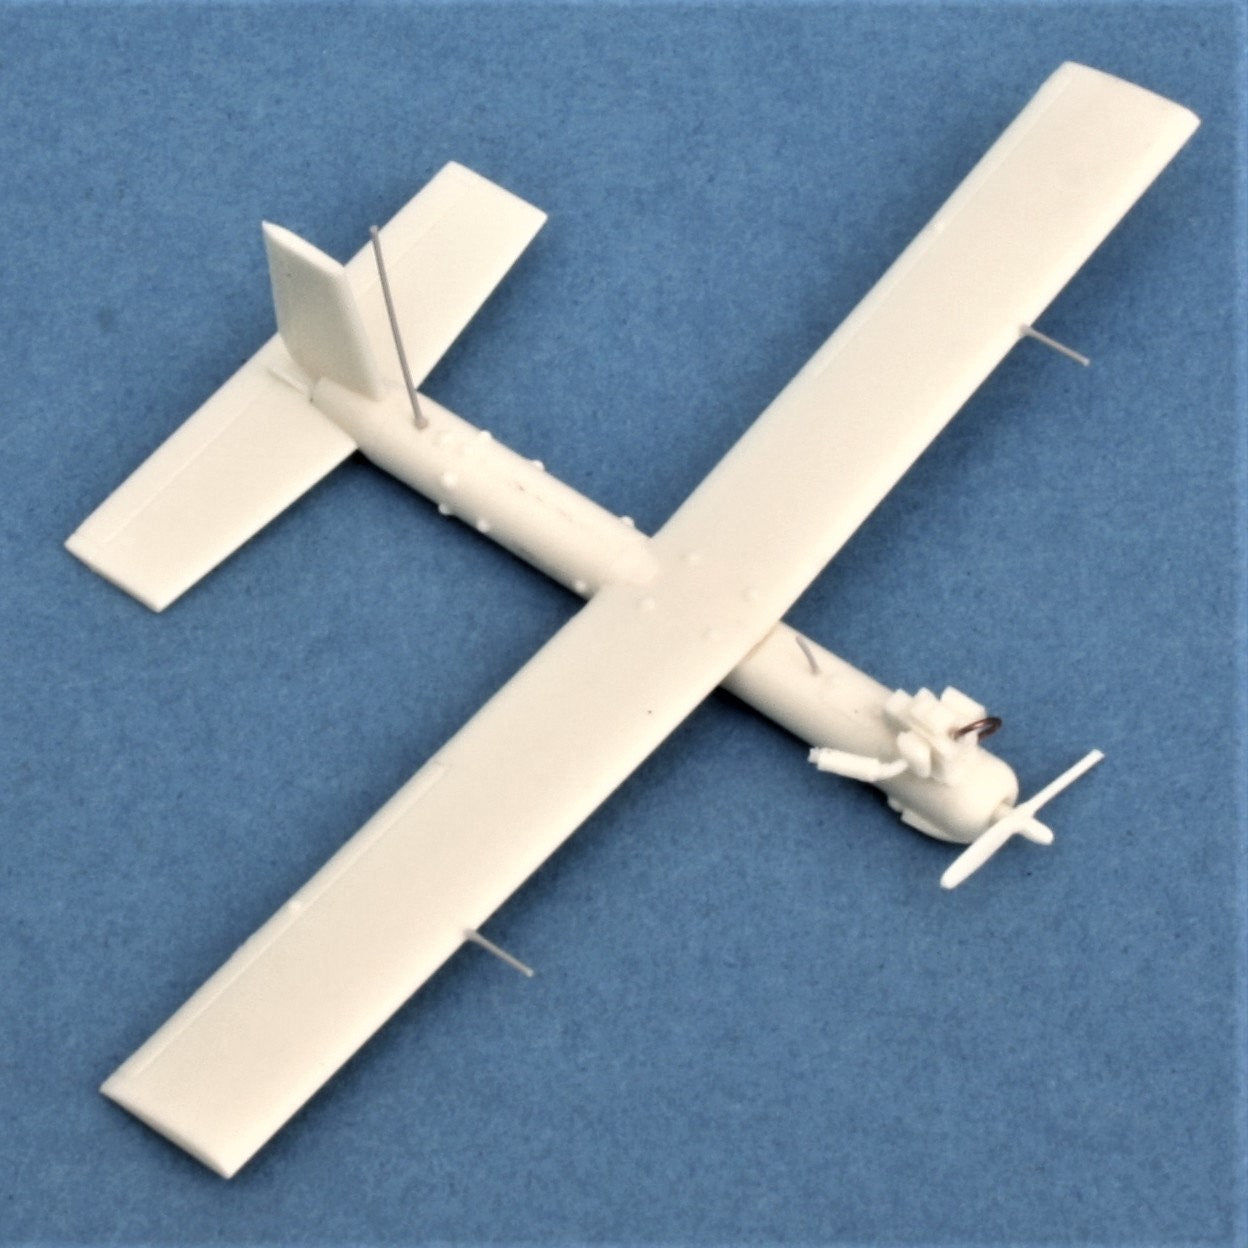 Silver Fox UAV Model and Accessories - 1/35